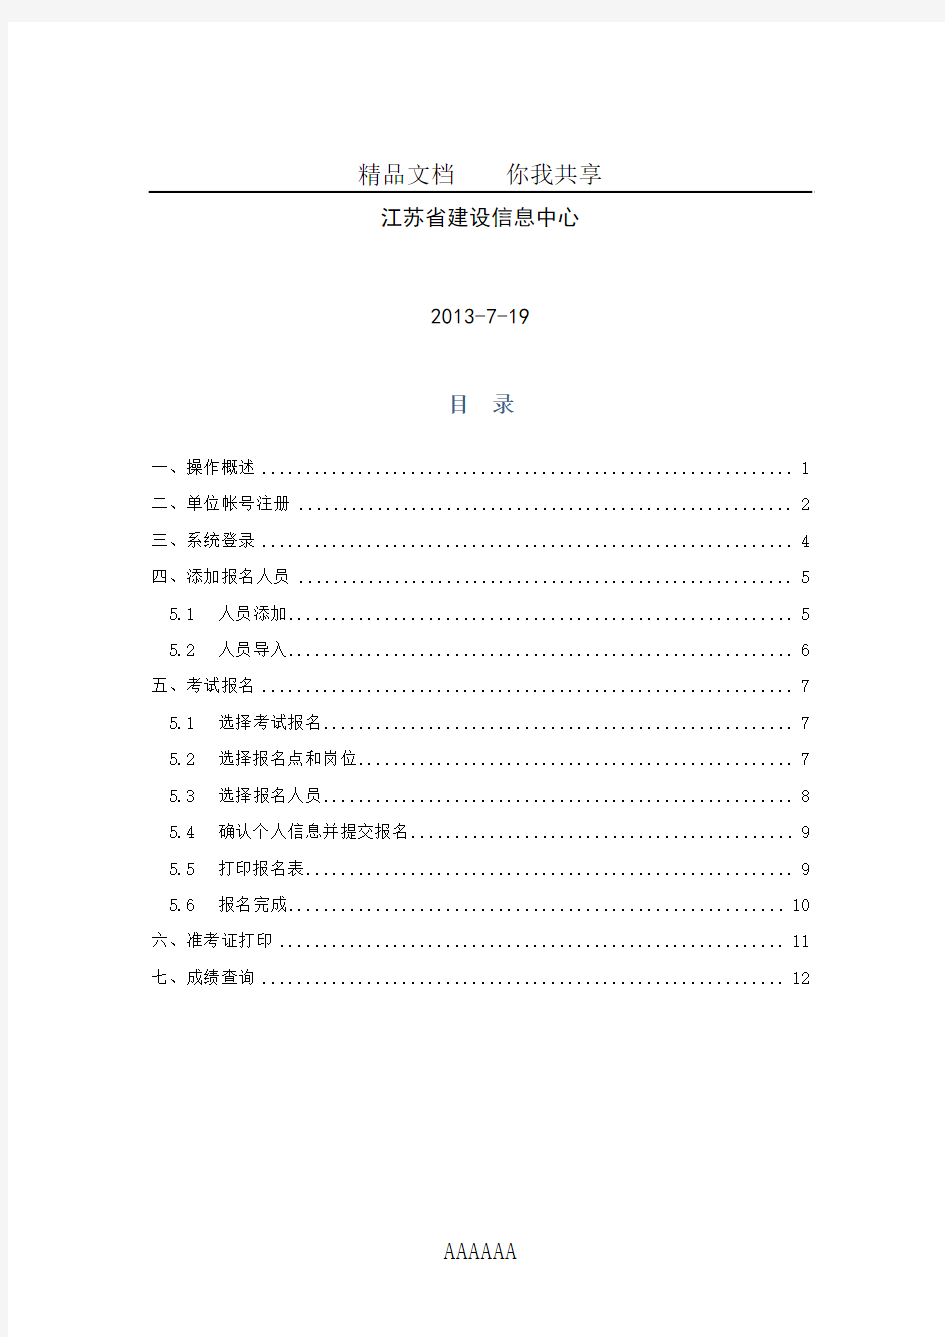 江苏省建设专业管理人员考试报名系统操作手册1.0(单位集体报名版)